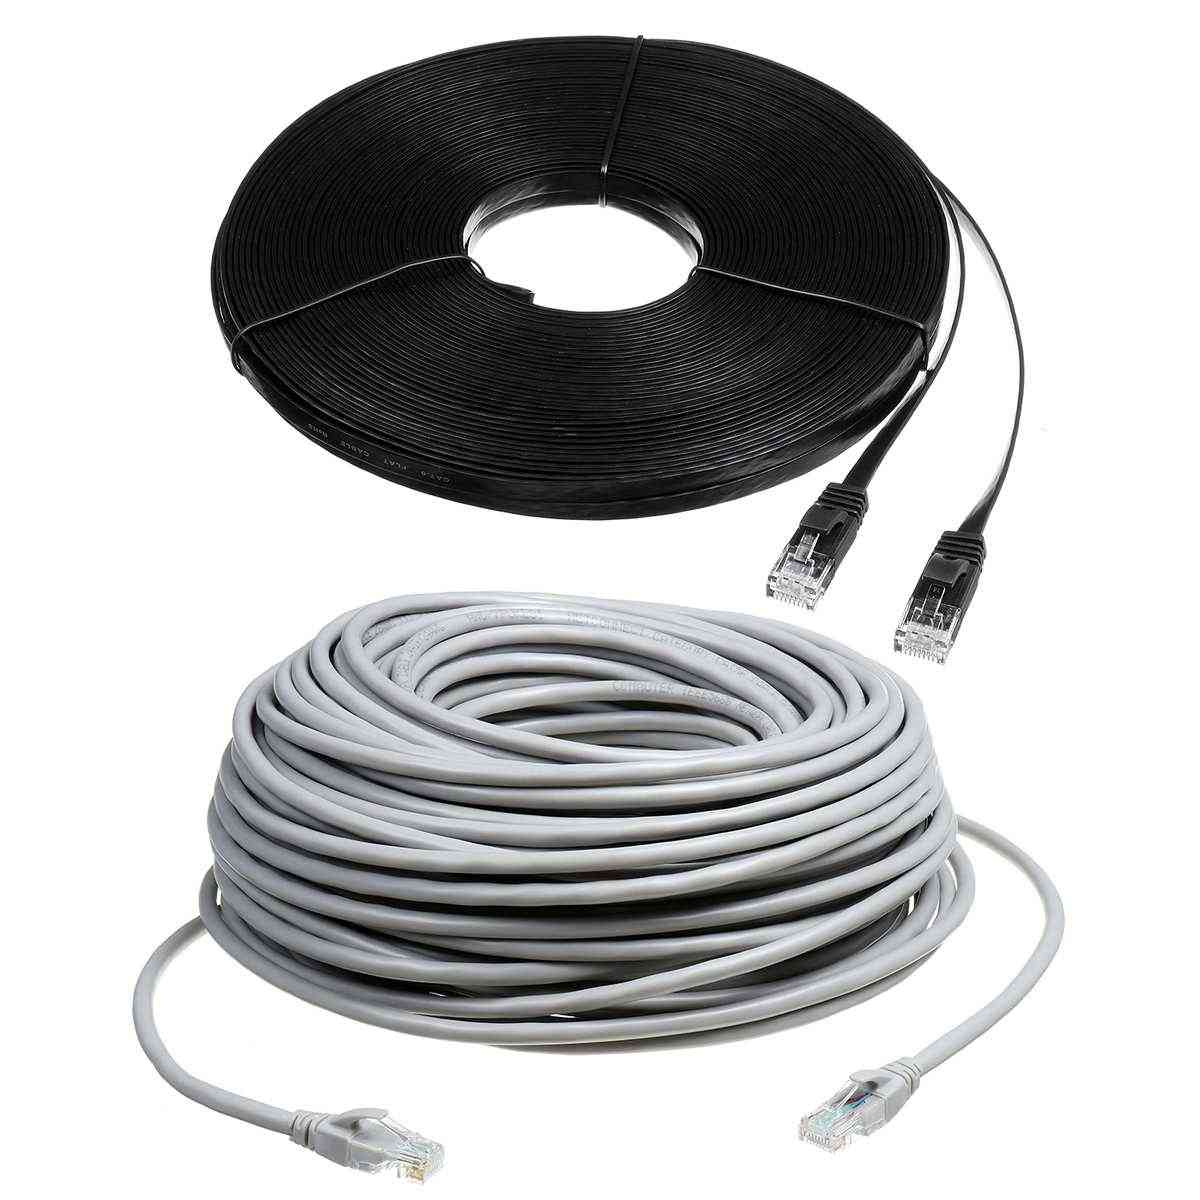 Ethernetový kabel cat6 rj45, patch kabely rj45 kategorie 6 pro modem routeru